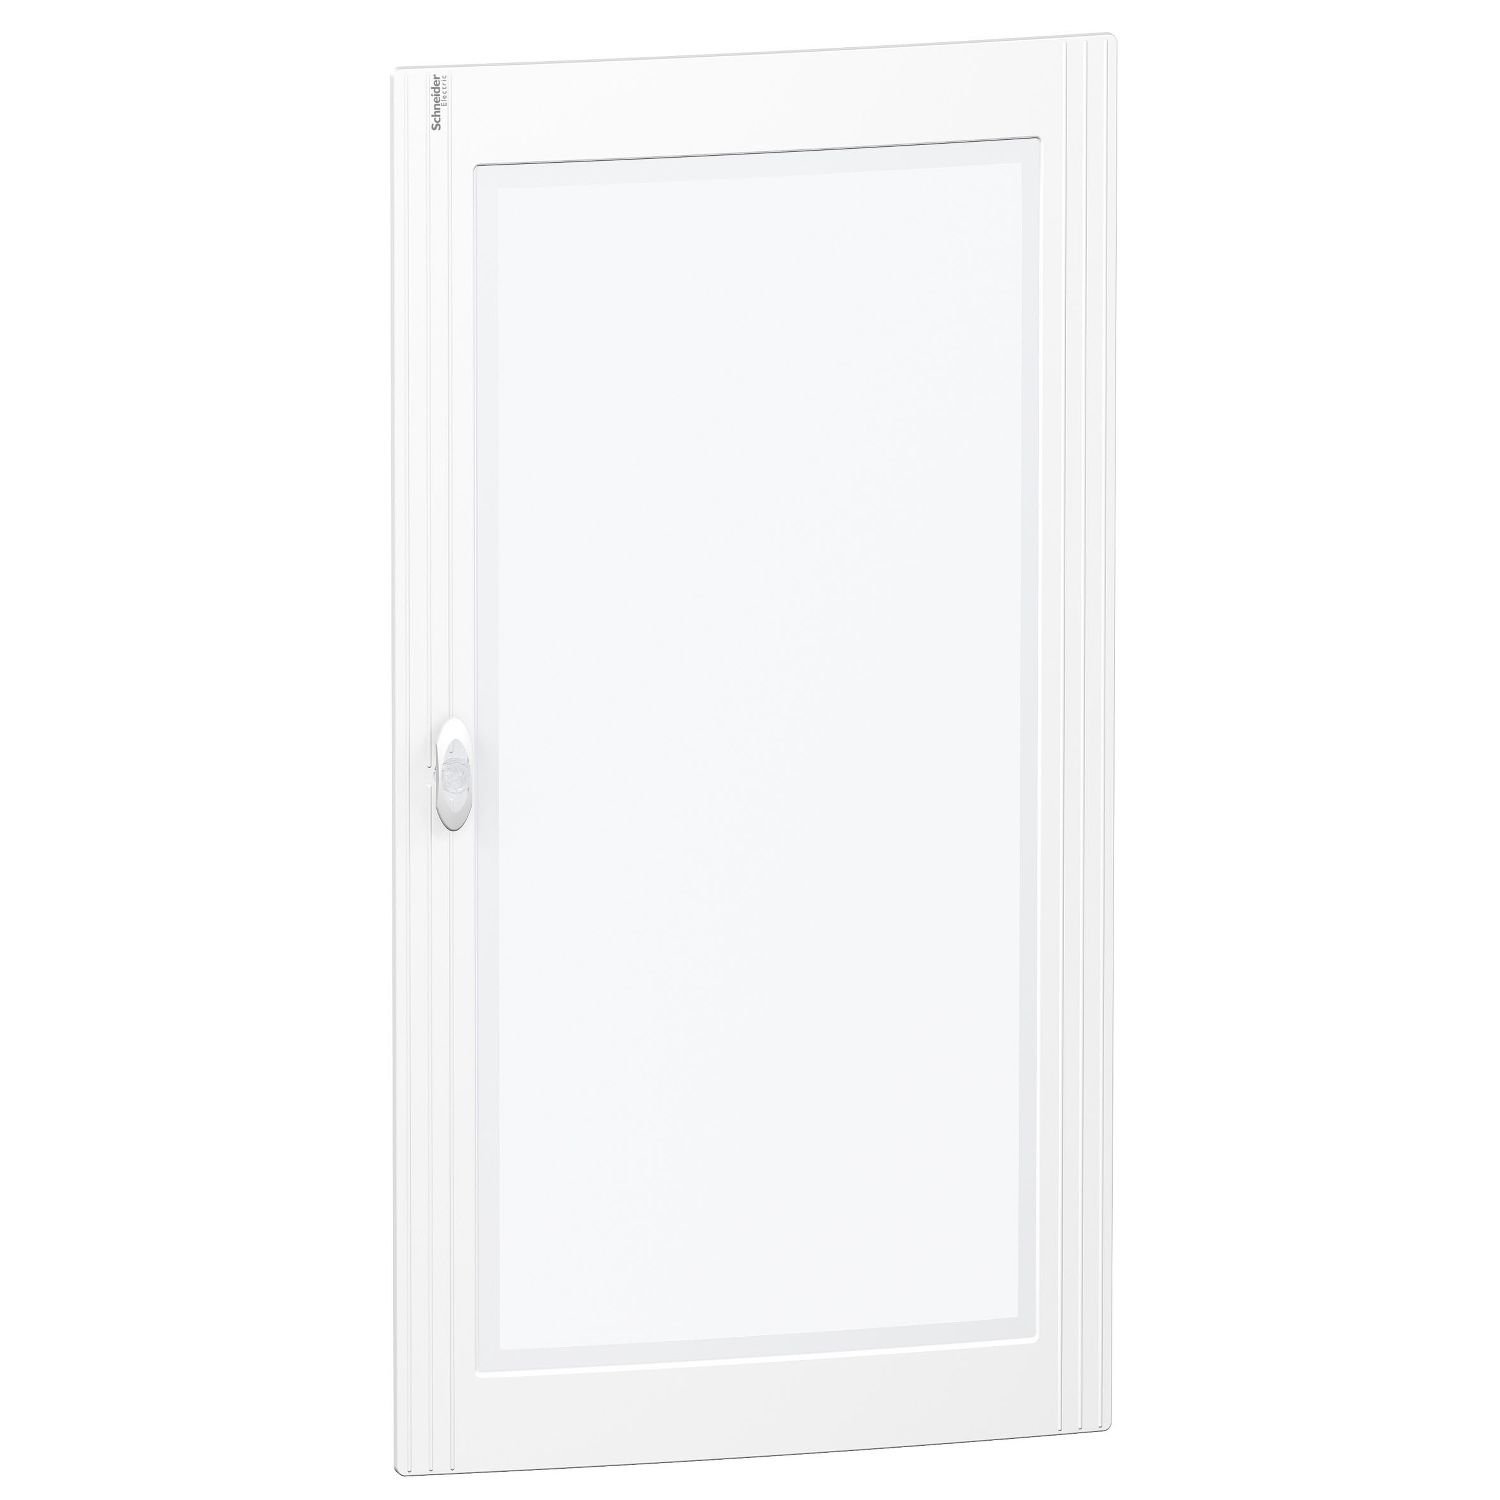 PRA15624 Pragma transparent door - for enclosure - 6 x 24 modules